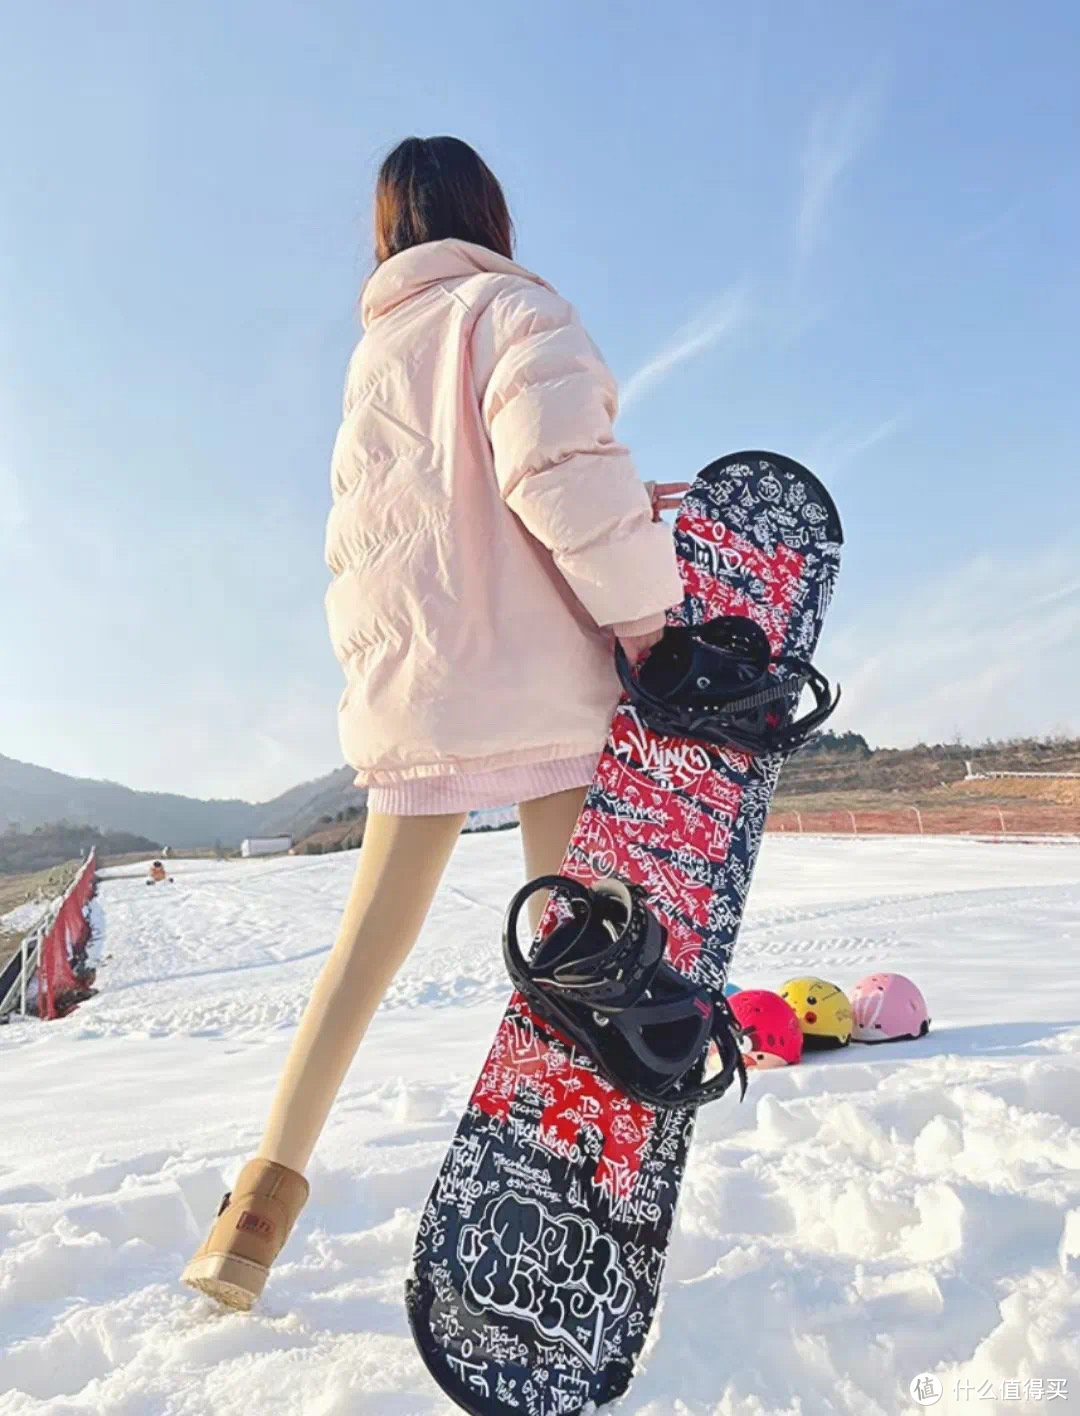 在青岛有这样一个好玩又平价的滑雪场